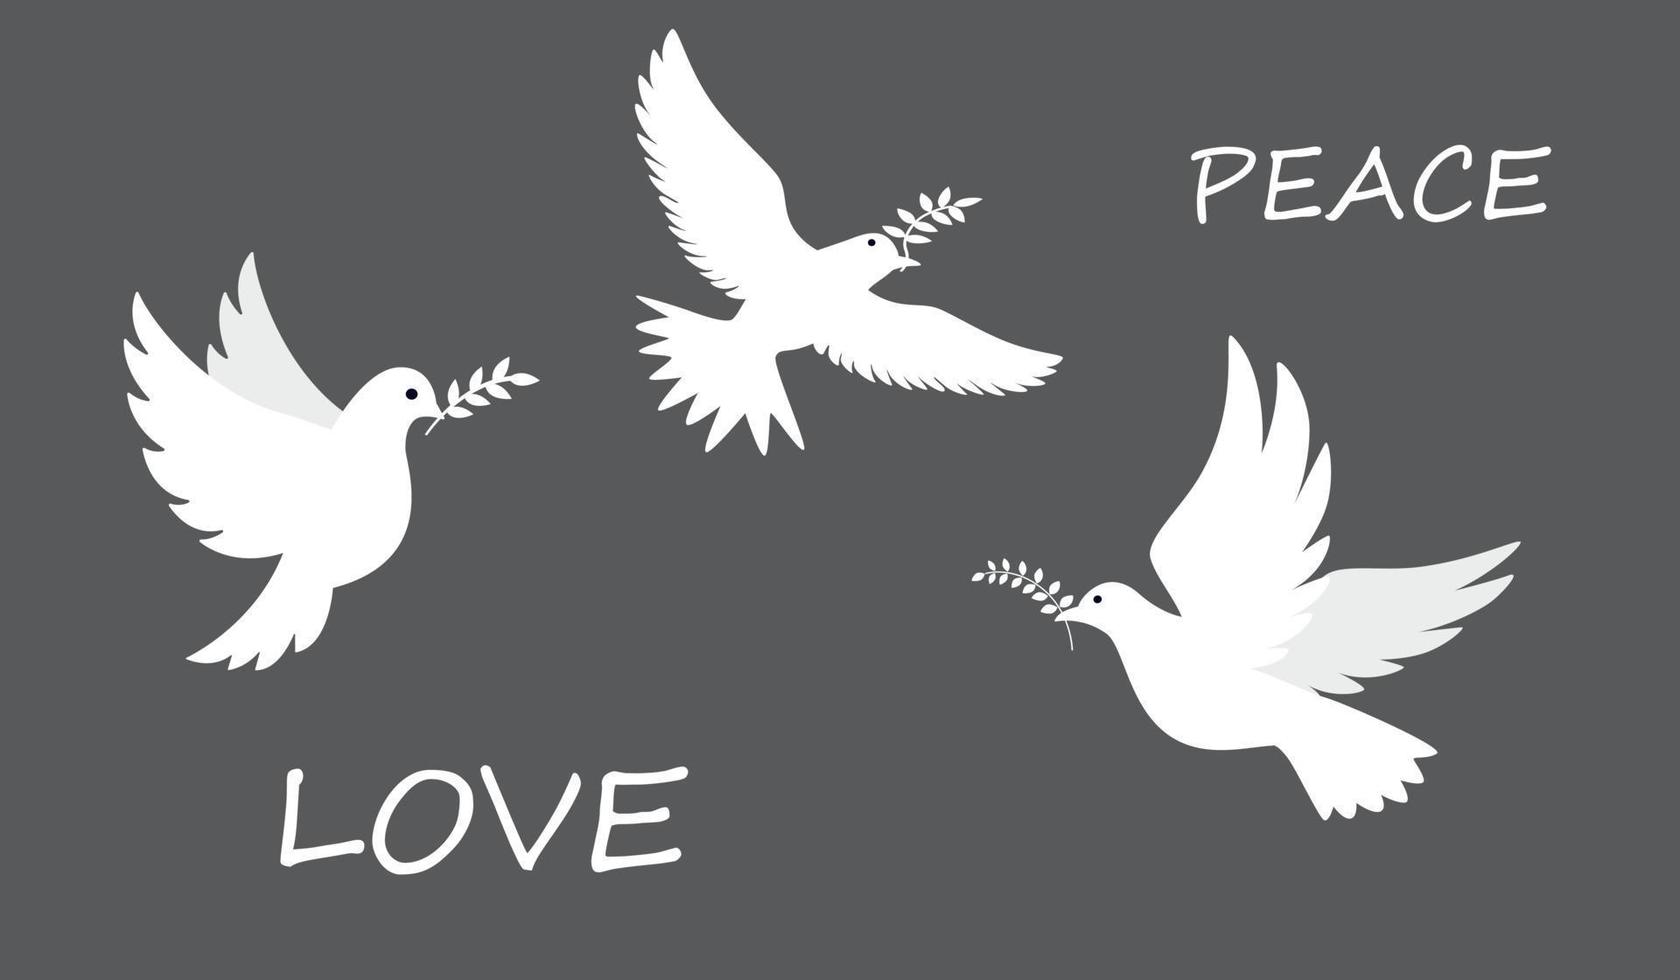 Paloma de la paz. pájaros voladores y de pie con ramas de olivo. paz y amor, libertad, sin concepto de guerra. ilustración vectorial moderna dibujada a mano. todos los elementos están aislados vector